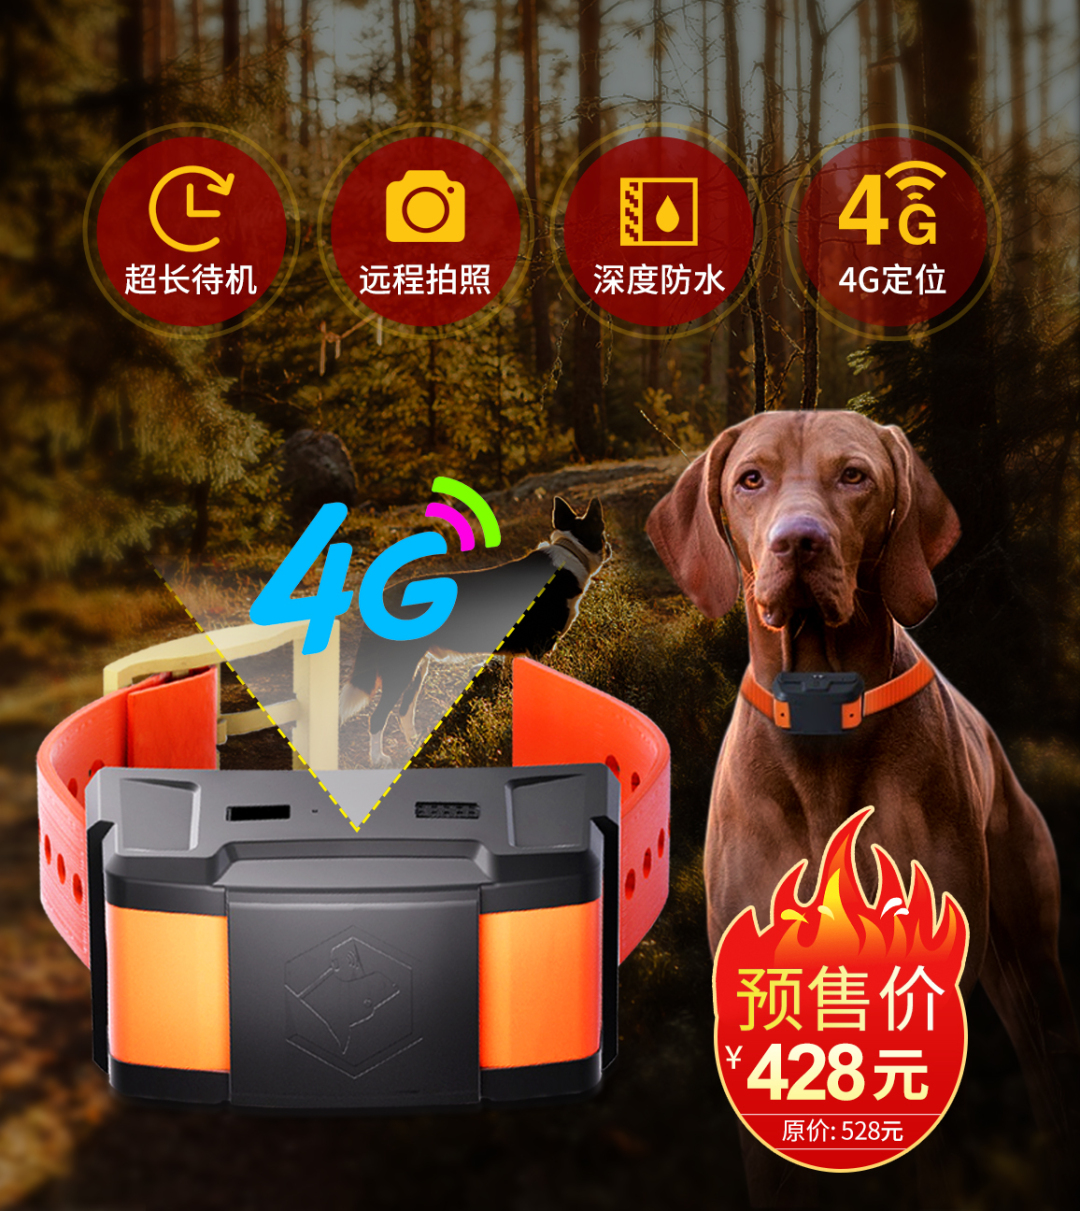 革泰新品4G猎狗定位器天网10号新品预售★隆重上市